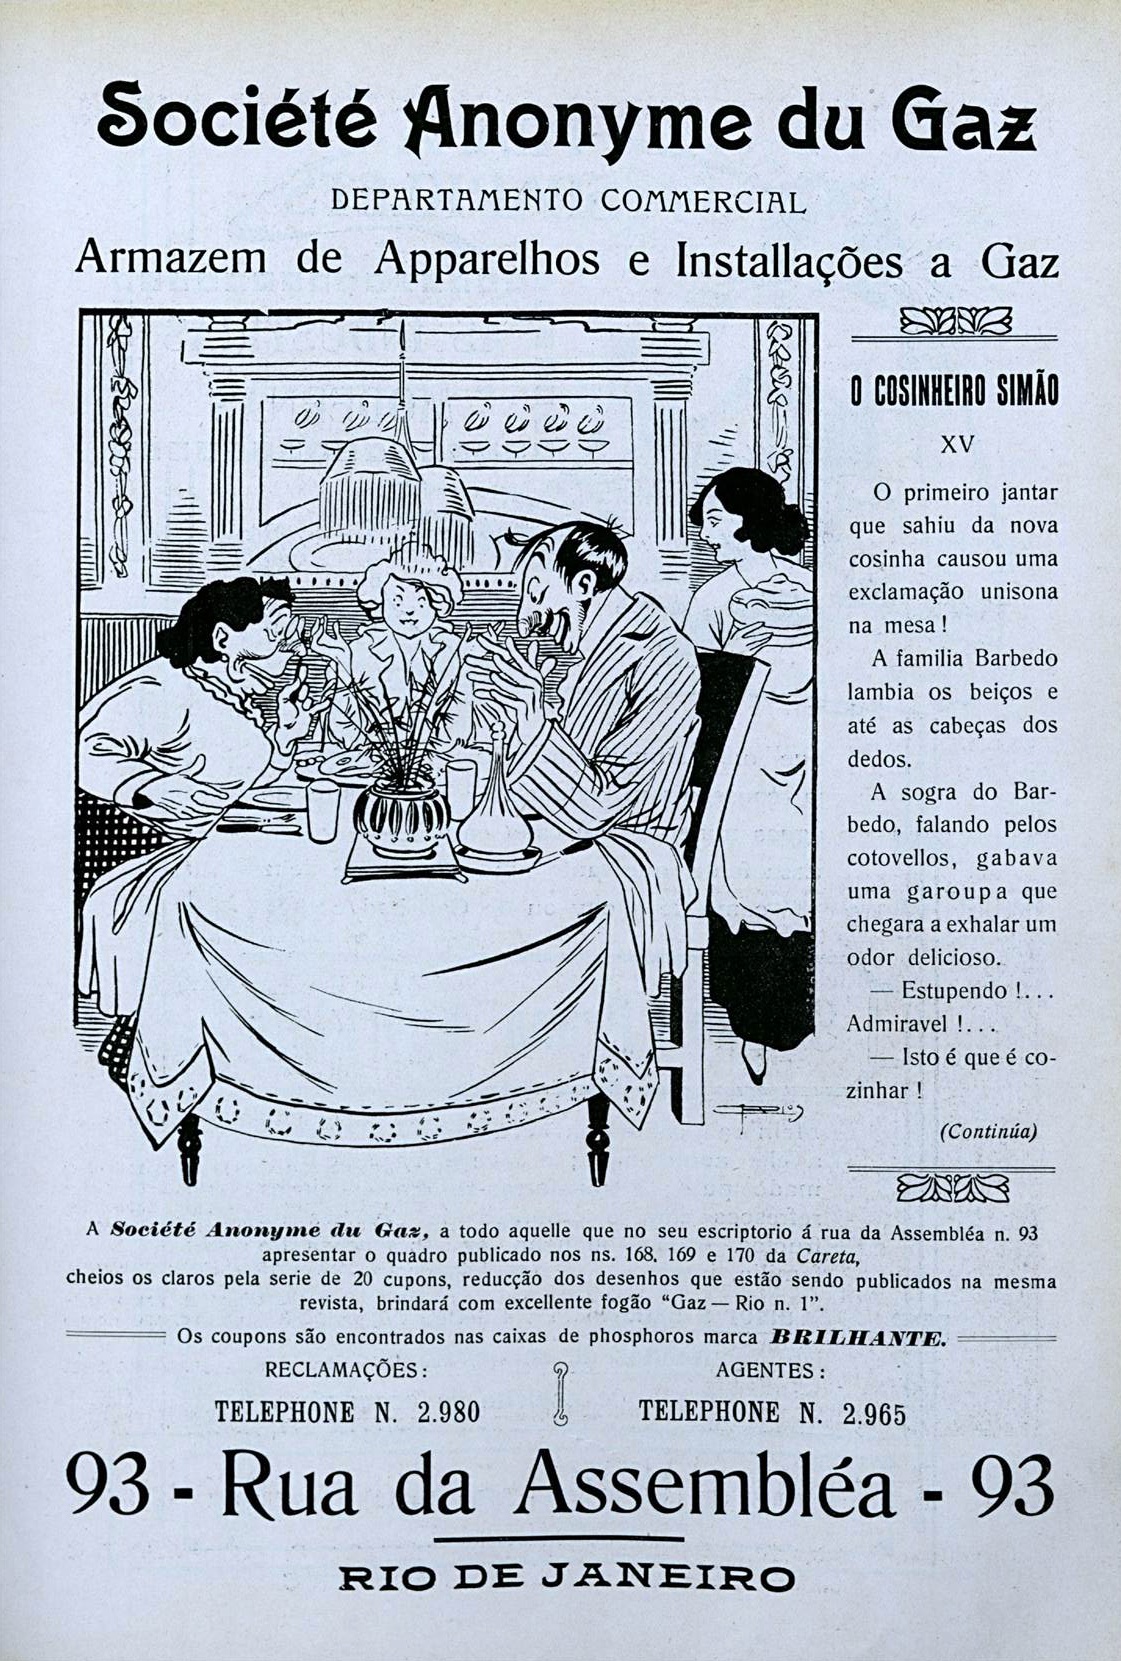 Campanha veiculada em 1911 promovendo o serviço de gás nos lares por meio da Société Anonyme du Gaz